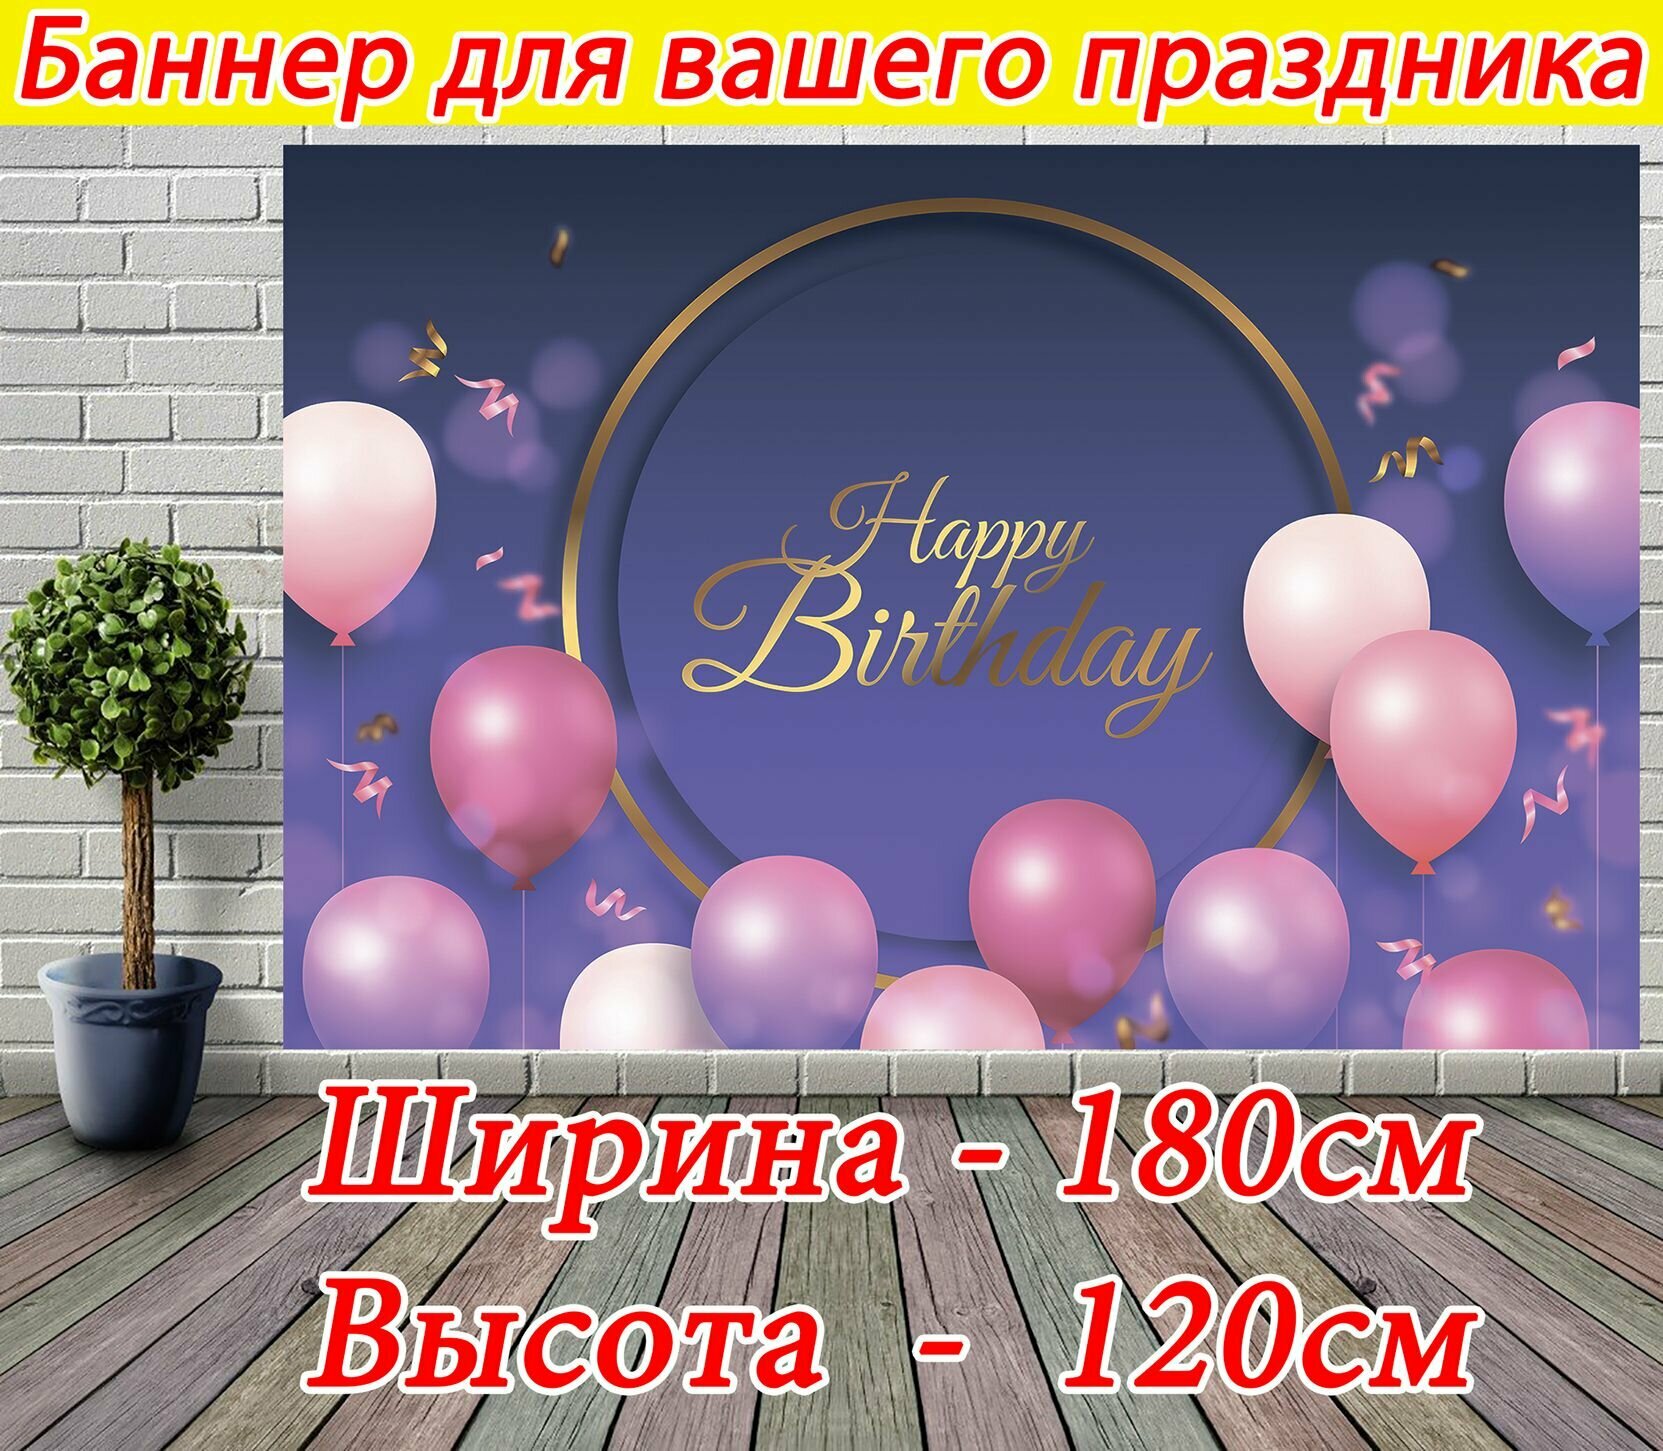 Баннер праздничный, темный с розовыми шарами декор для фотозоны на День Рождения 180 x 120